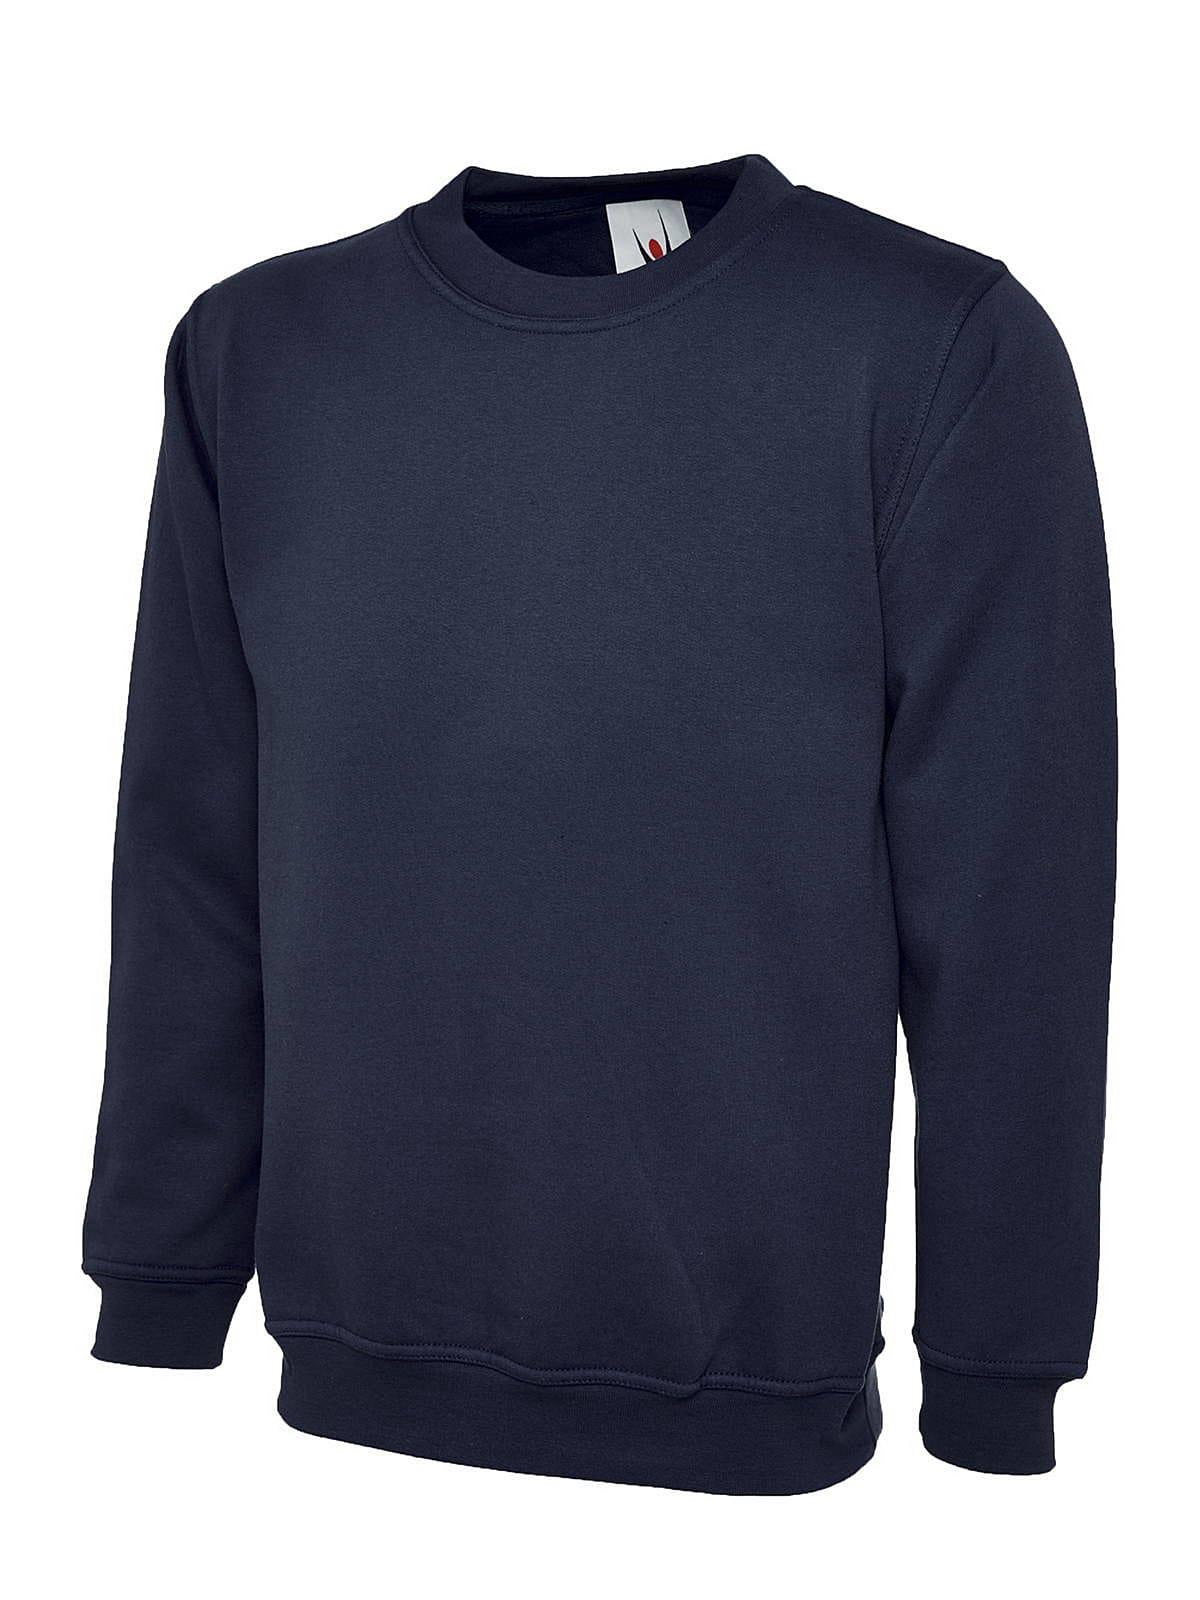 Uneek 300GSM Classic Sweatshirt in Navy (Product Code: UC203)